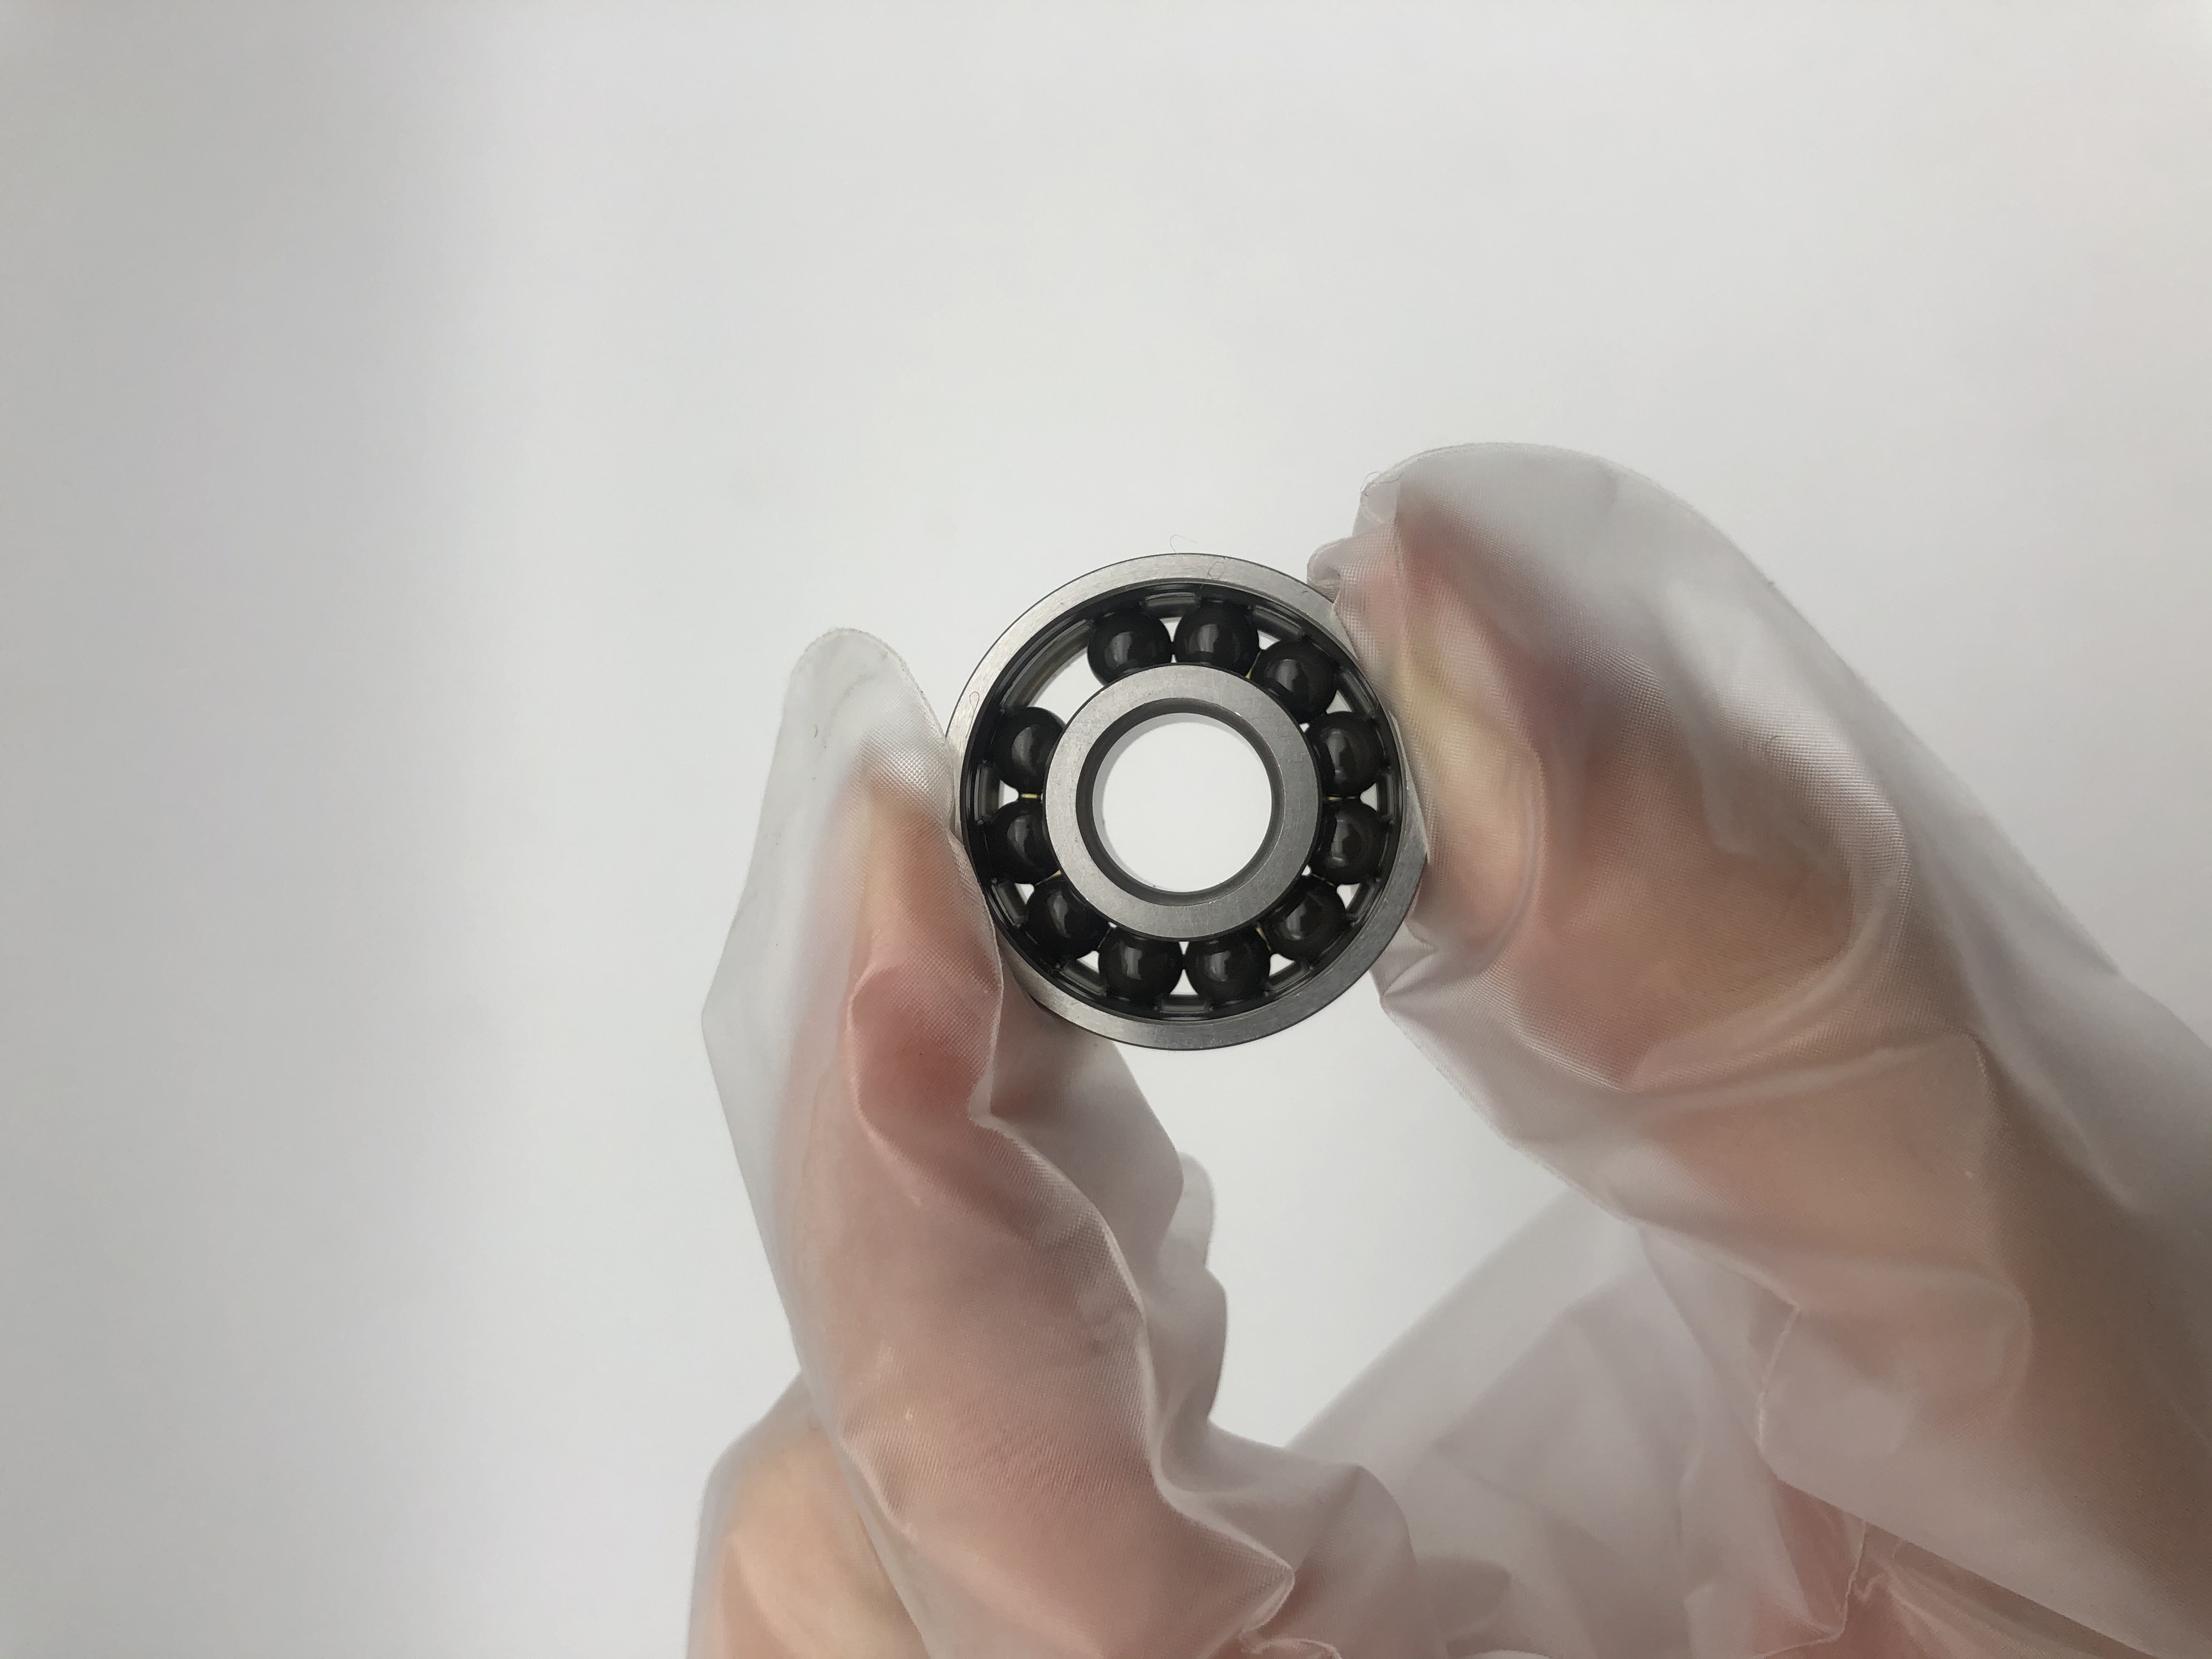 X7008 HQ1 P4 Cronidur 30 rings ceramic full balls Touchdown bearing use for turbo molecular pumpÃ¯Â¼Âvacuum pump